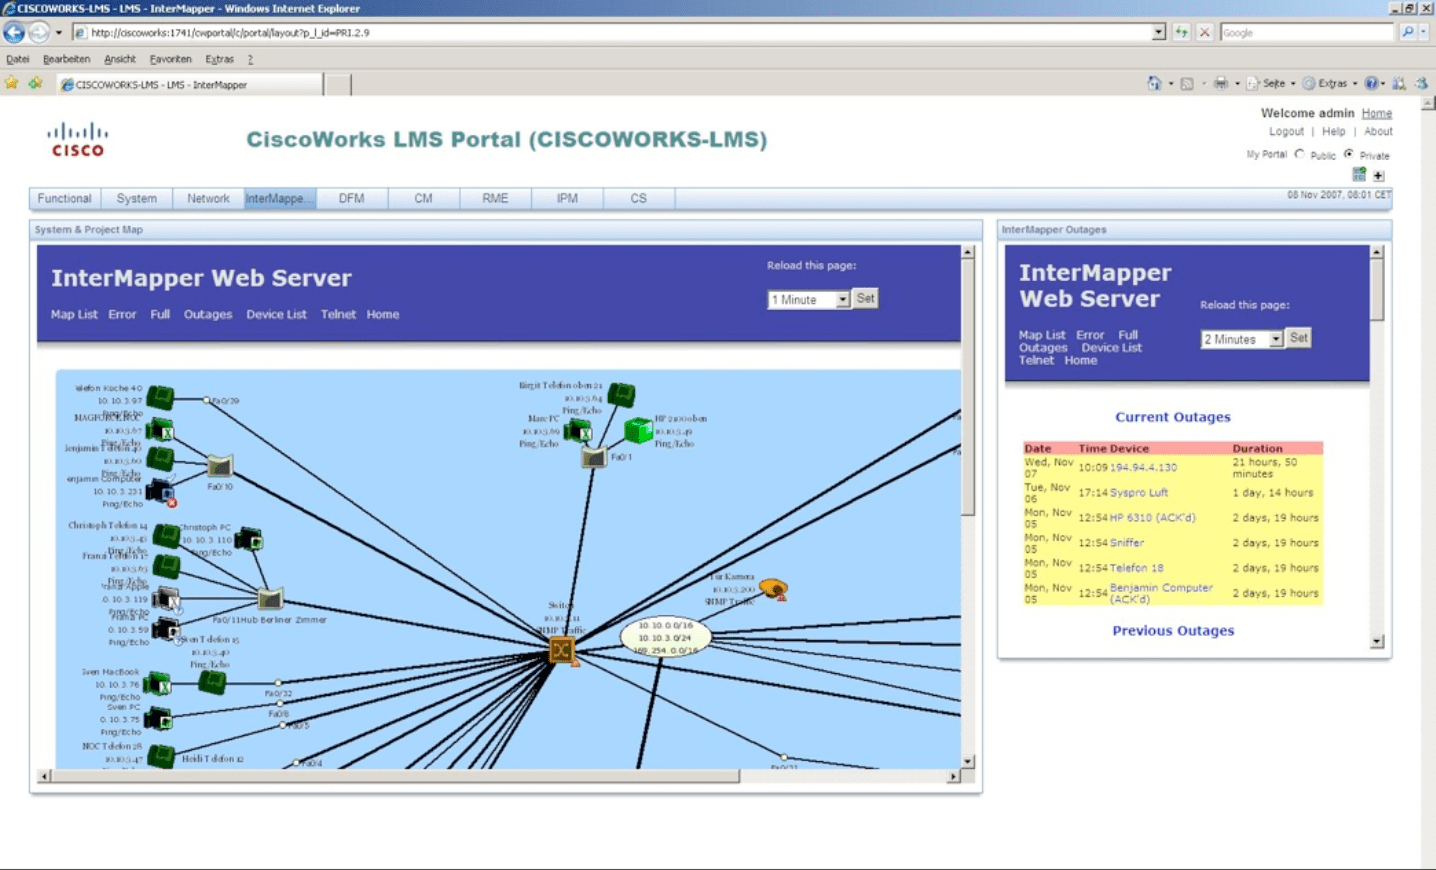 Intégration CiscoWorks LMS et InterMapper : les cartes de supervision réseau d'InterMapper sont directement accessibles dans CiscoWorks